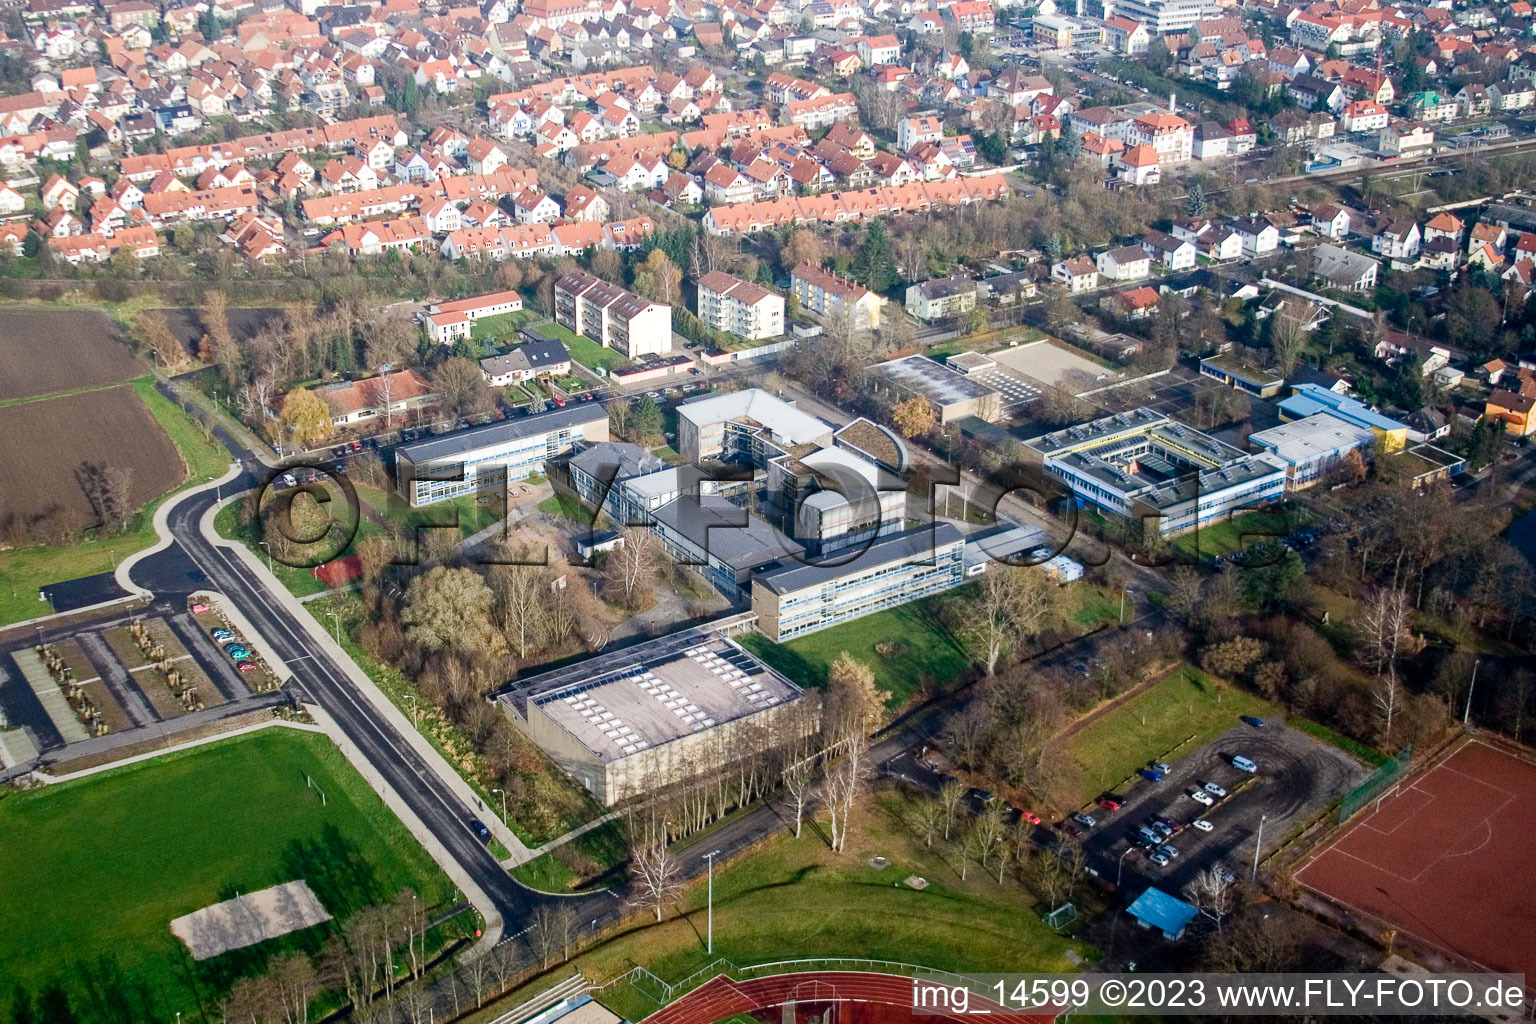 IGS à Kandel dans le département Rhénanie-Palatinat, Allemagne d'en haut